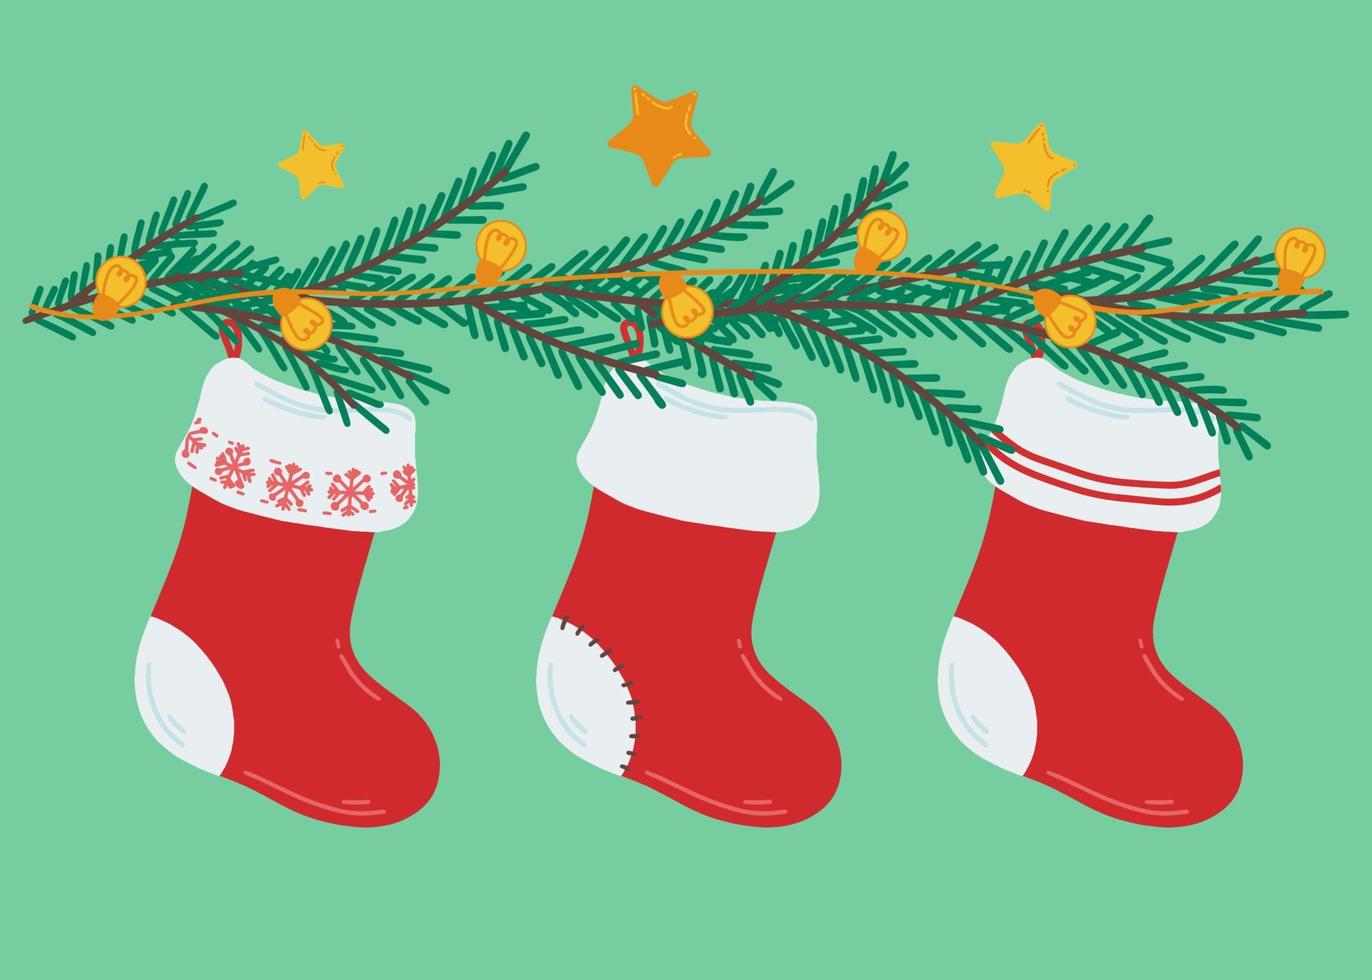 Illustration mit Weihnachtssocken für Geschenke. tannenzweige mit glühbirnen und sternen. Weihnachtsgirlande. Dekoration mit Tannenzweigen und Stechpalme. vektorillustration für drucke, postkarten. vektor